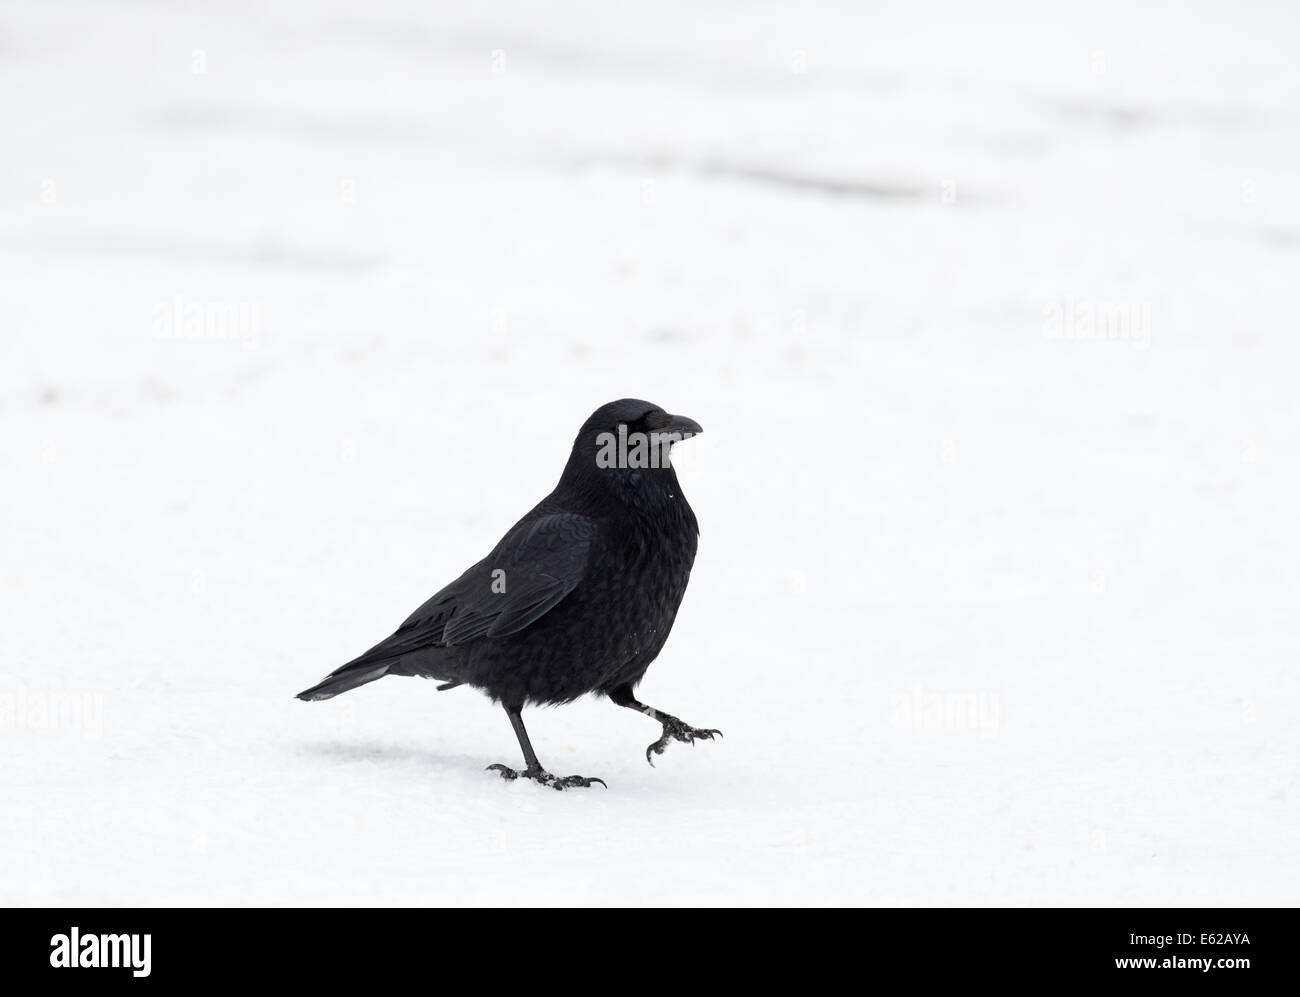 Corneille noire Corvus corone marcher sur la neige Suisse Banque D'Images